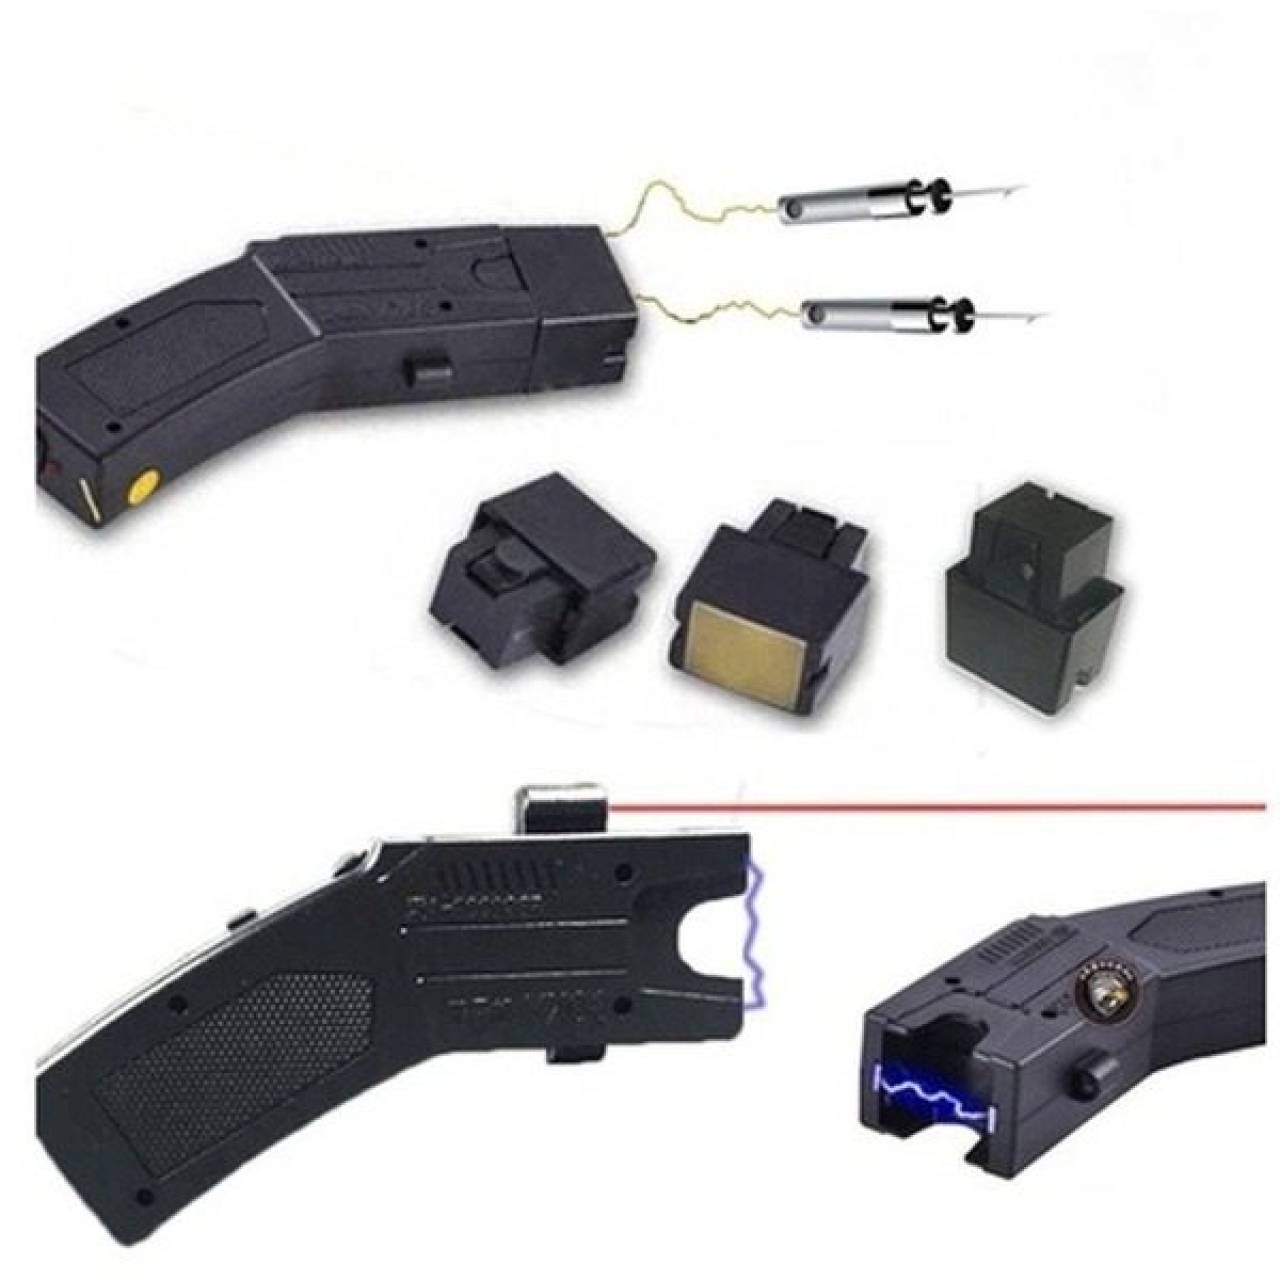 Pistol taser cu electrosoc la distanta si laser pentru autoaparare